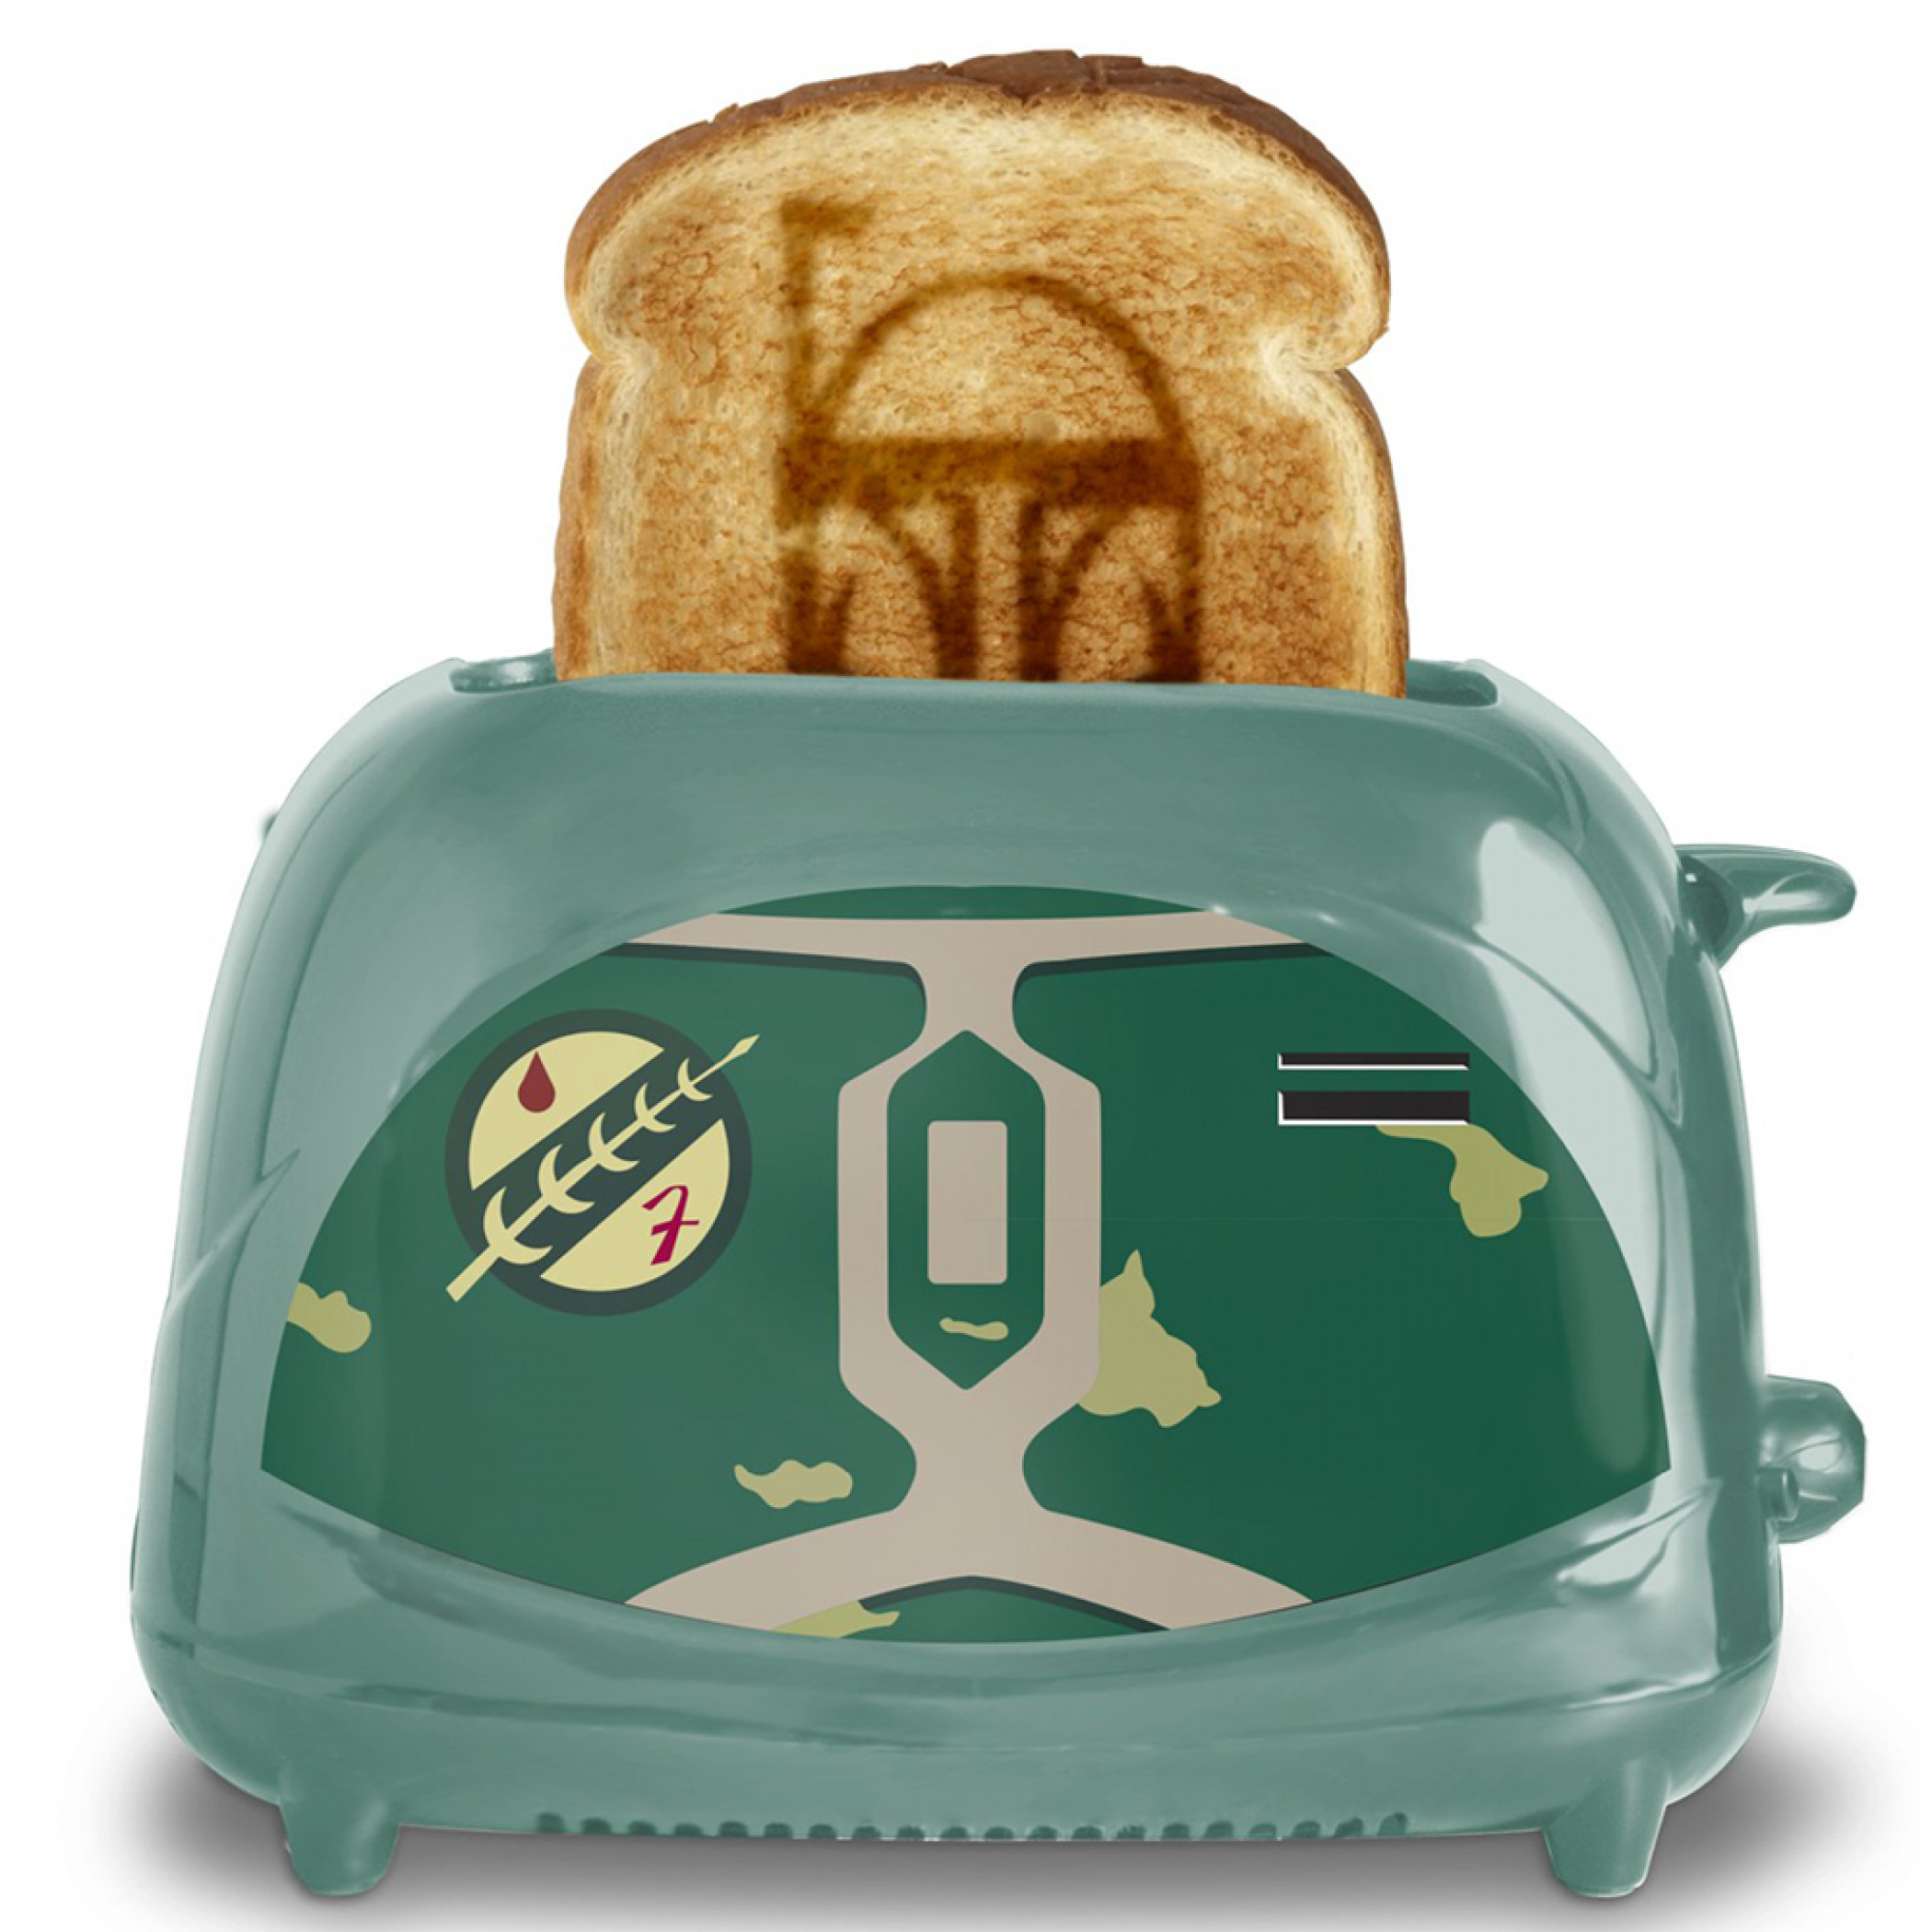 Star Wars Boba Fett Costume Elite Toaster